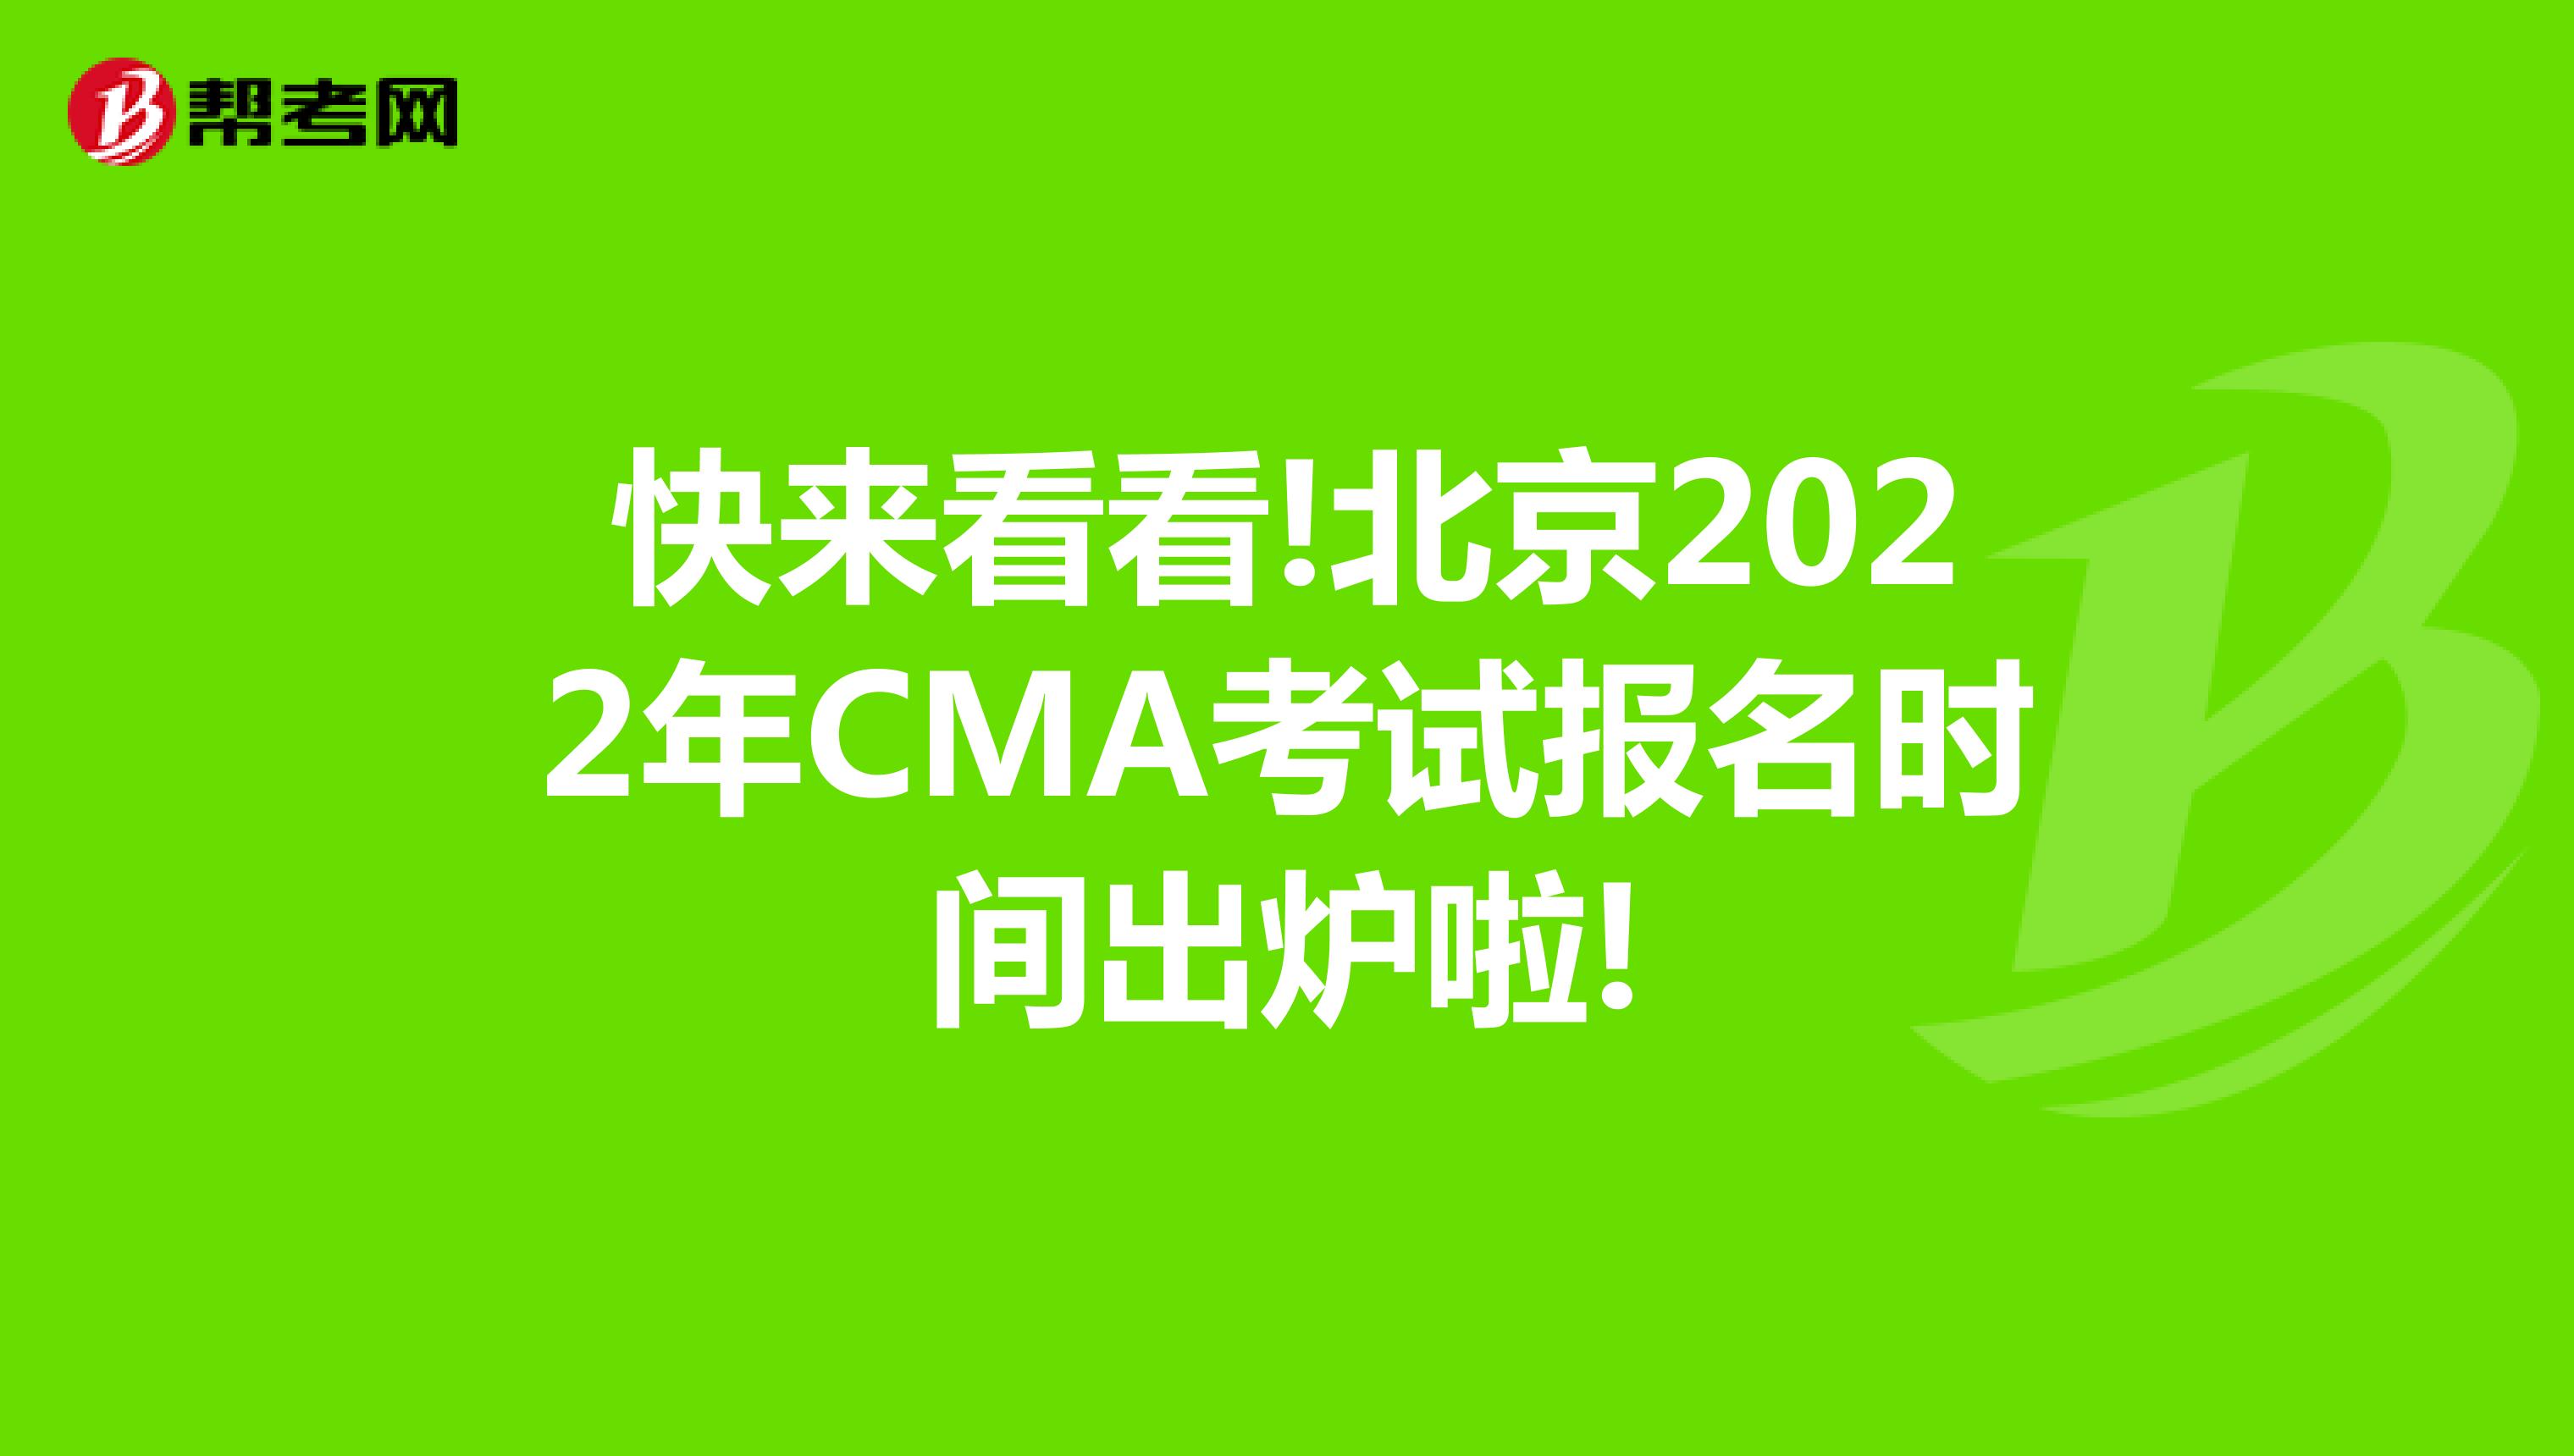 快来看看!北京2022年CMA考试报名时间出炉啦!